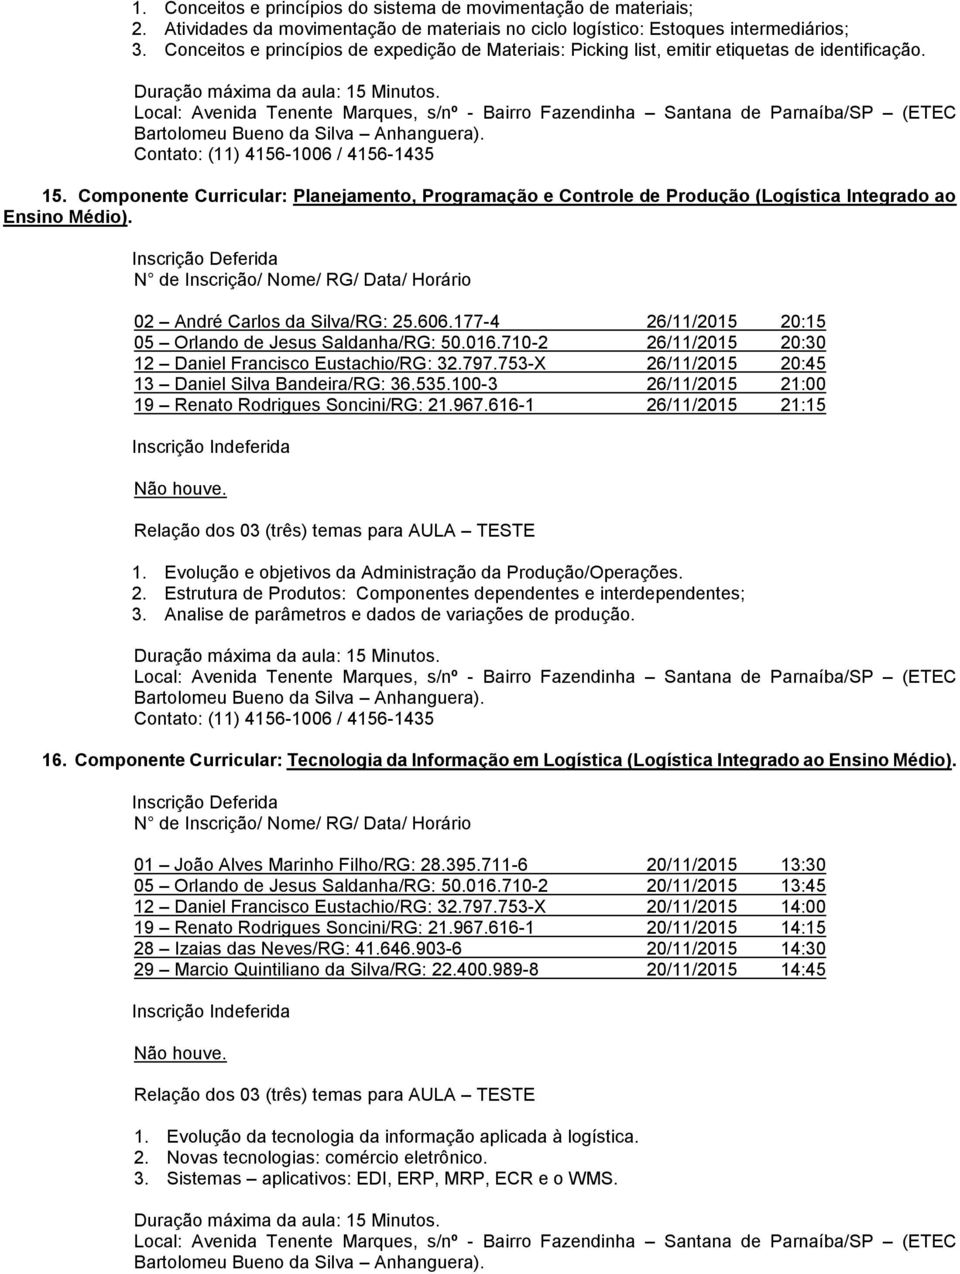 Componente Curricular: Planejamento, Programação e Controle de Produção (Logística Integrado ao Ensino Médio). 02 André Carlos da Silva/RG: 25.606.